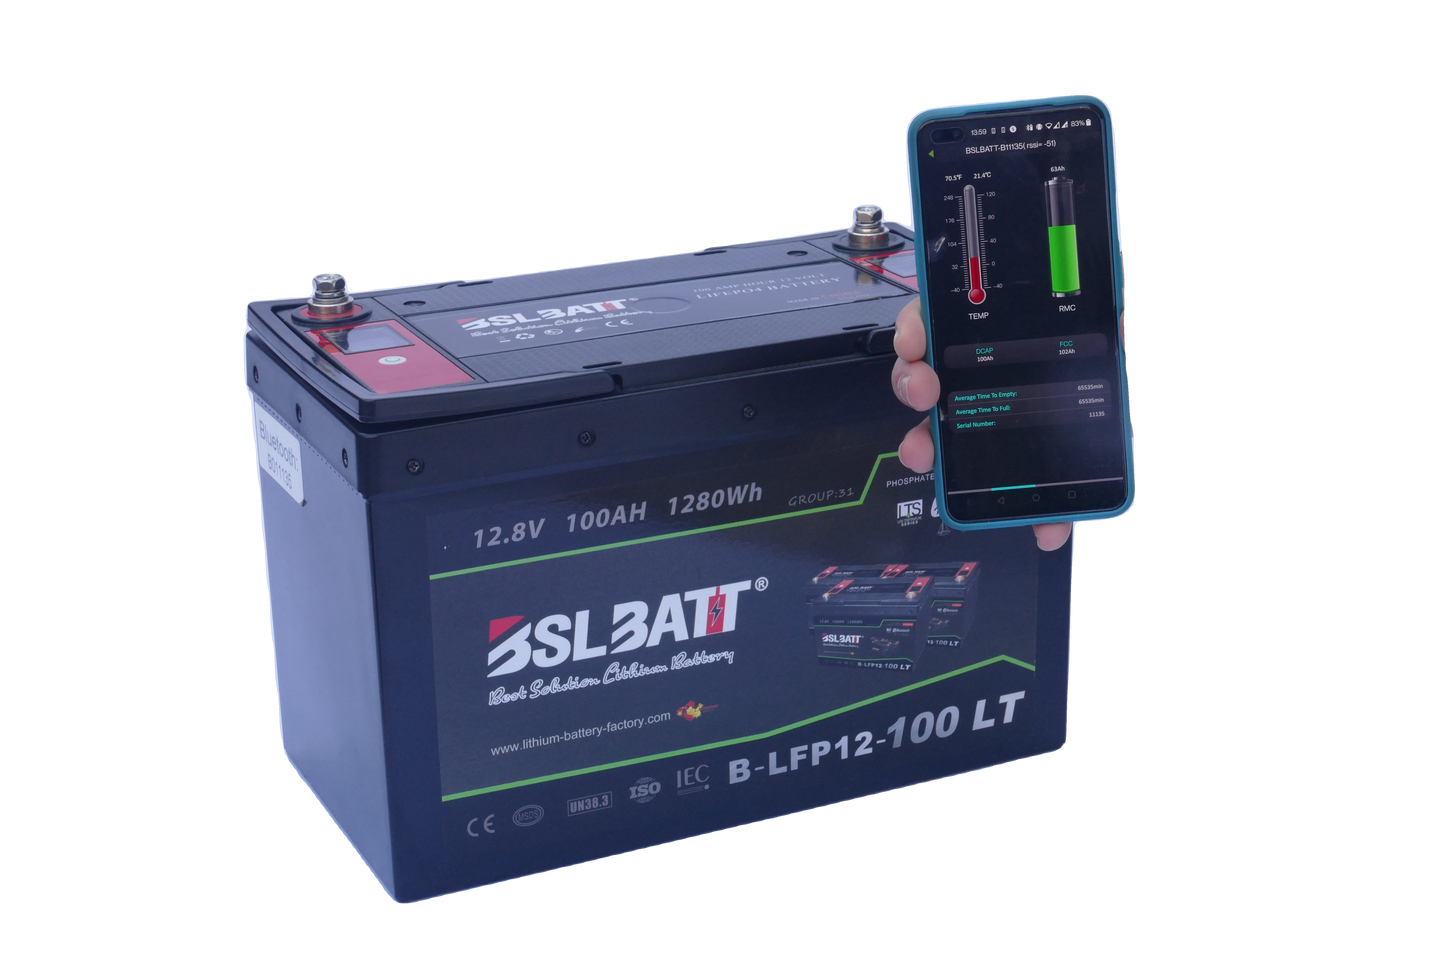 BSLBATT 12V 100AH Lithium Battery (bluetooth+display)